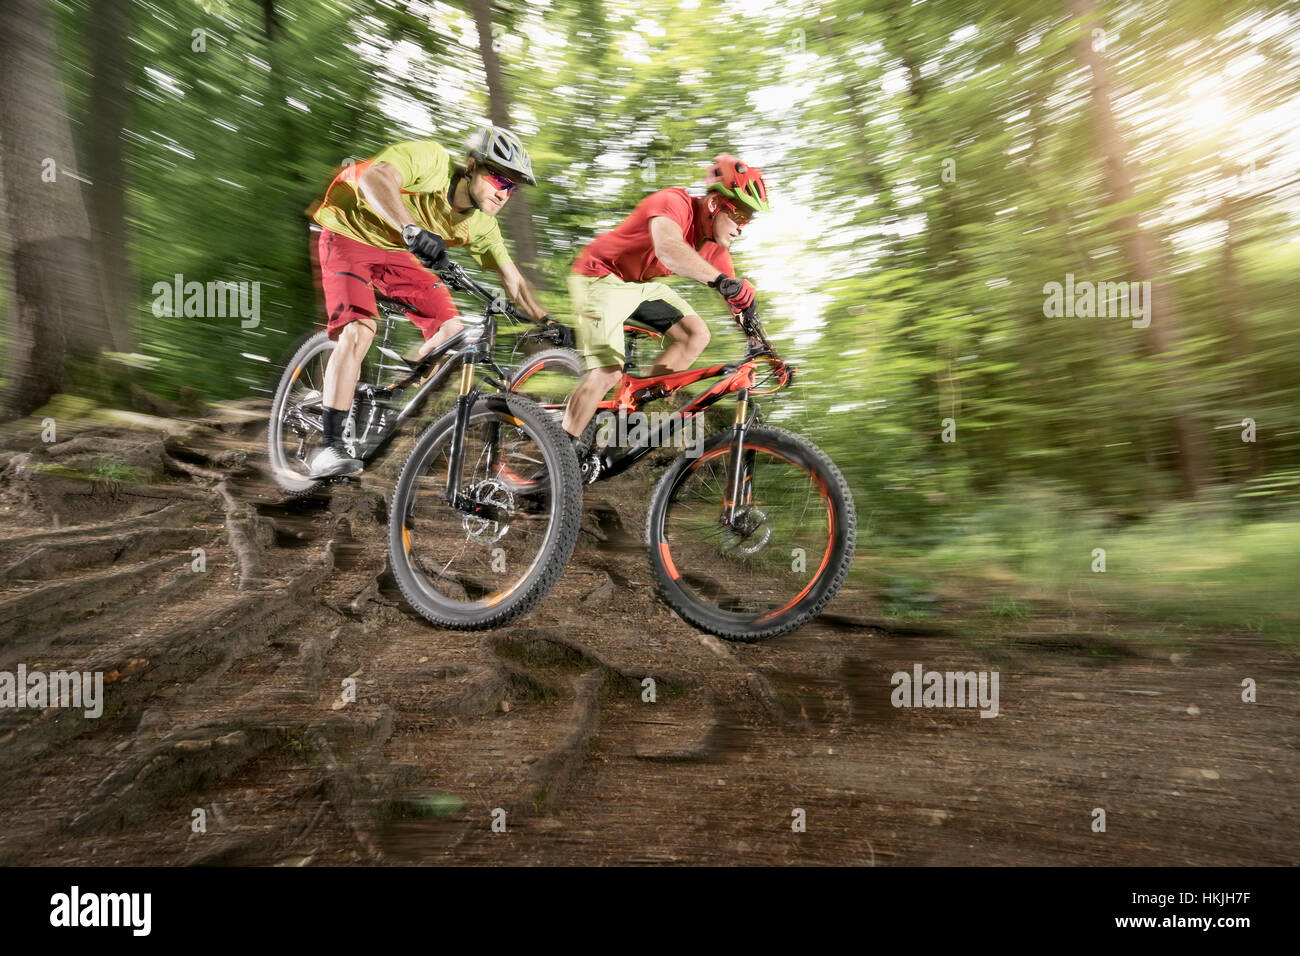 Zwei Mountainbiker fahren über Wurzeln im Wald, Bayern, Deutschland Stockfoto